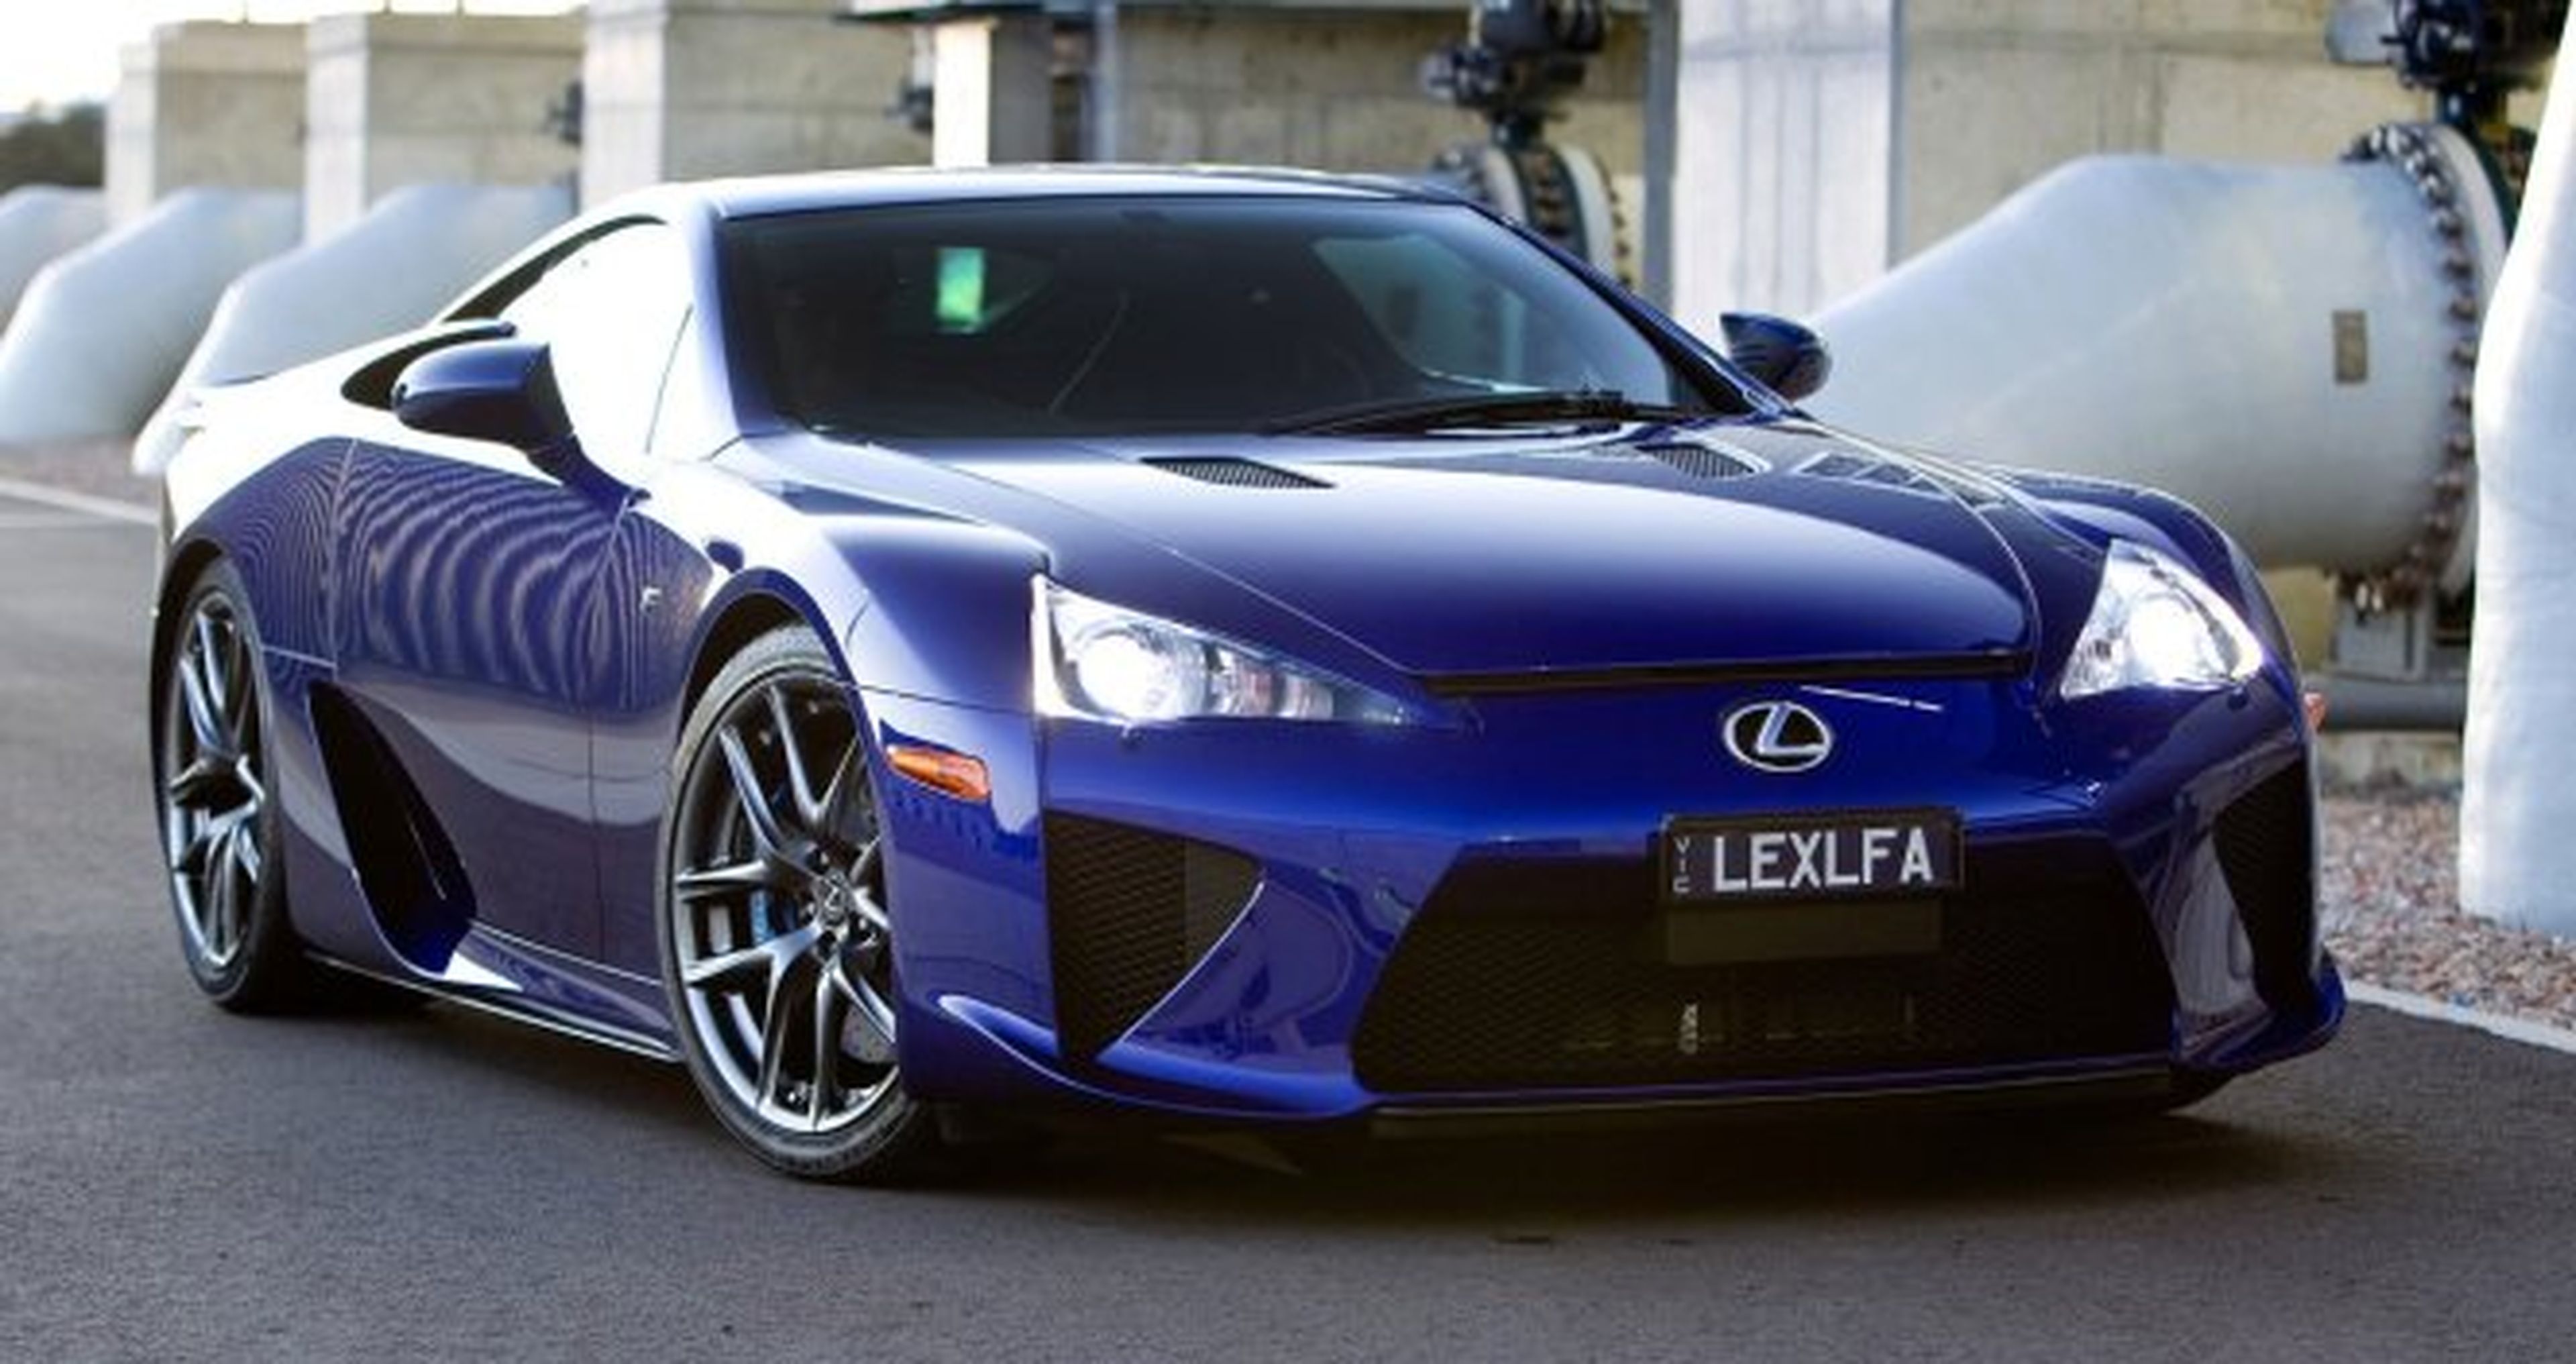 5 secretos que desconocías del Lexus LFA